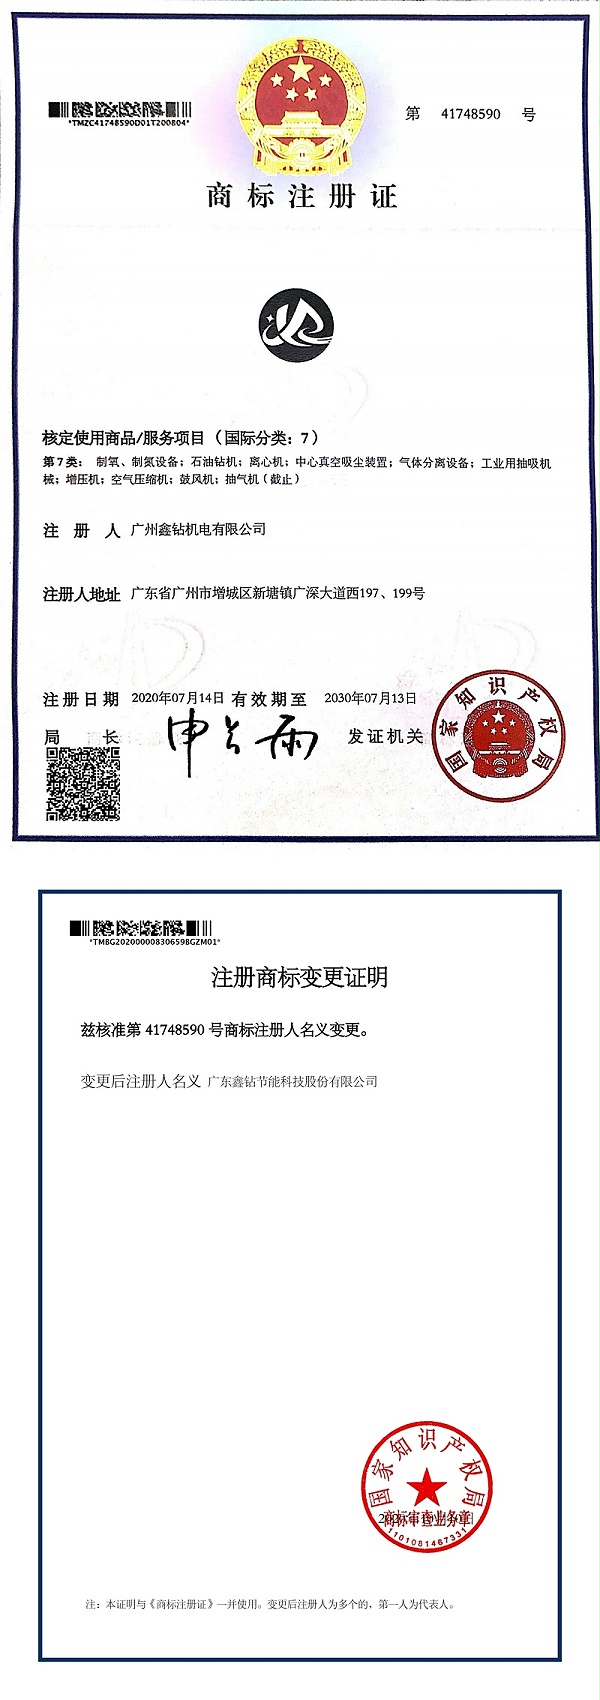 鑫钻 商标注册证41748590-1(1)